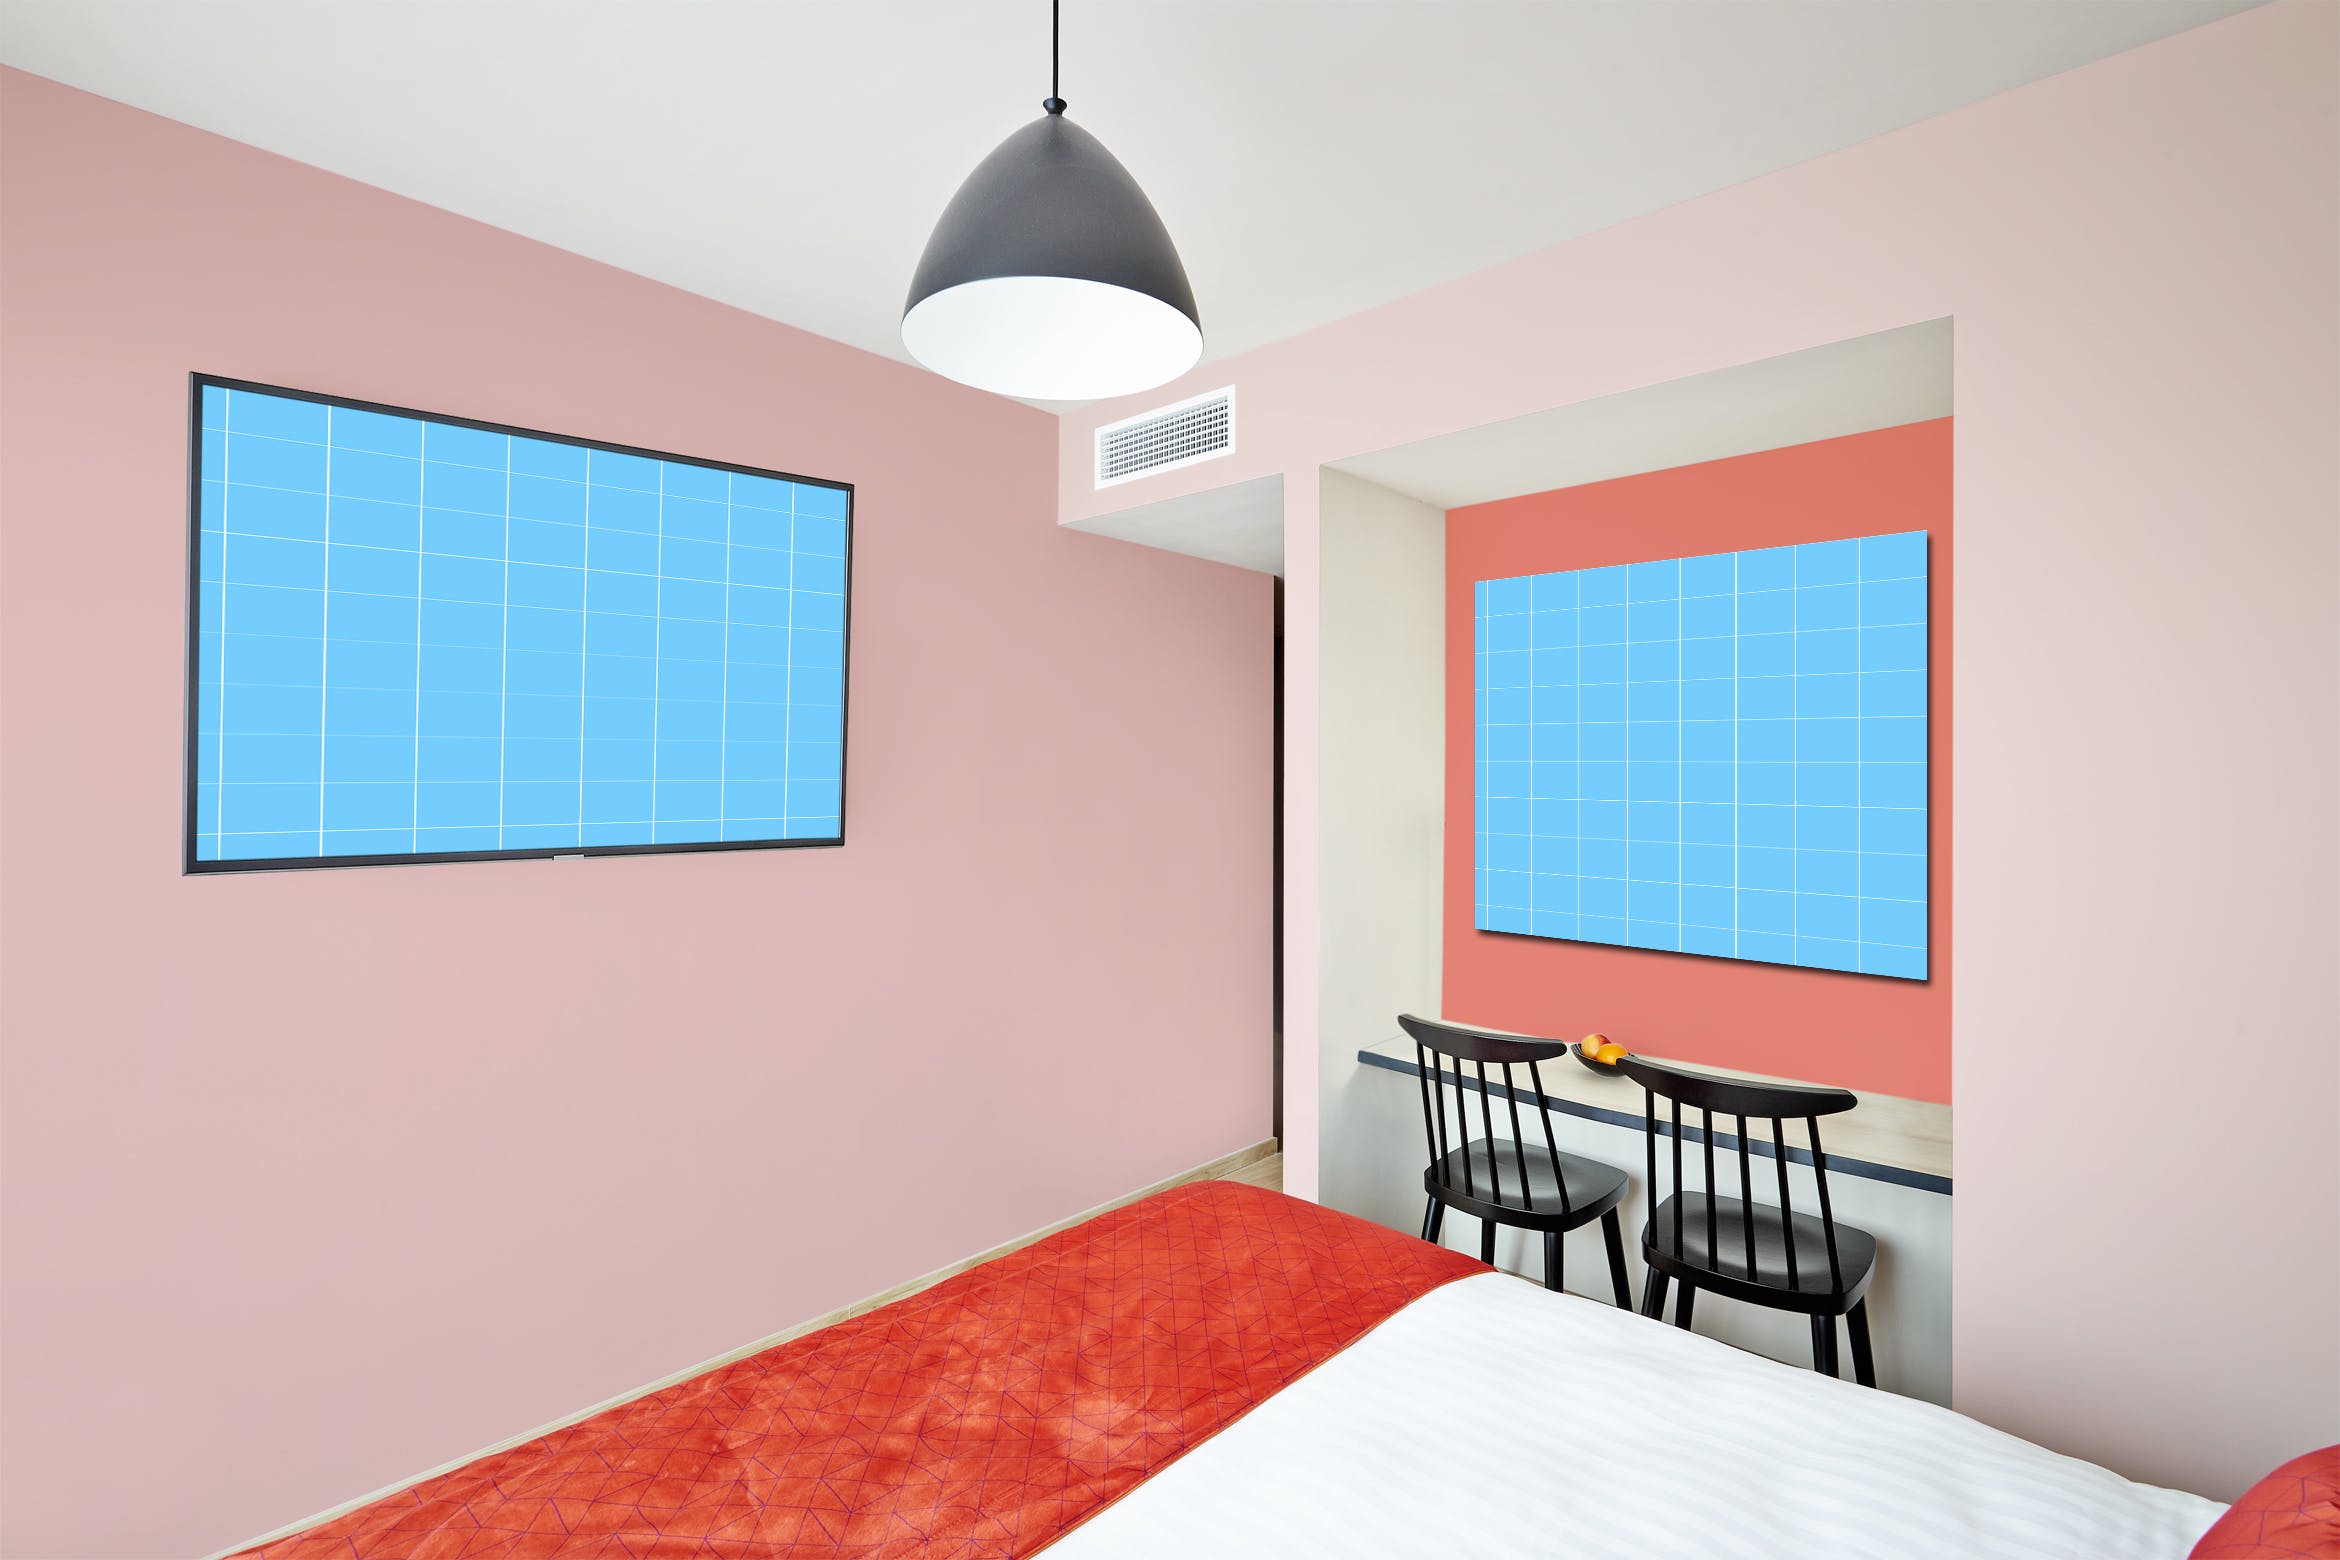 酒店房间装饰画框样机第一素材精选模板v01 Hotel-Room-01-Mockup插图